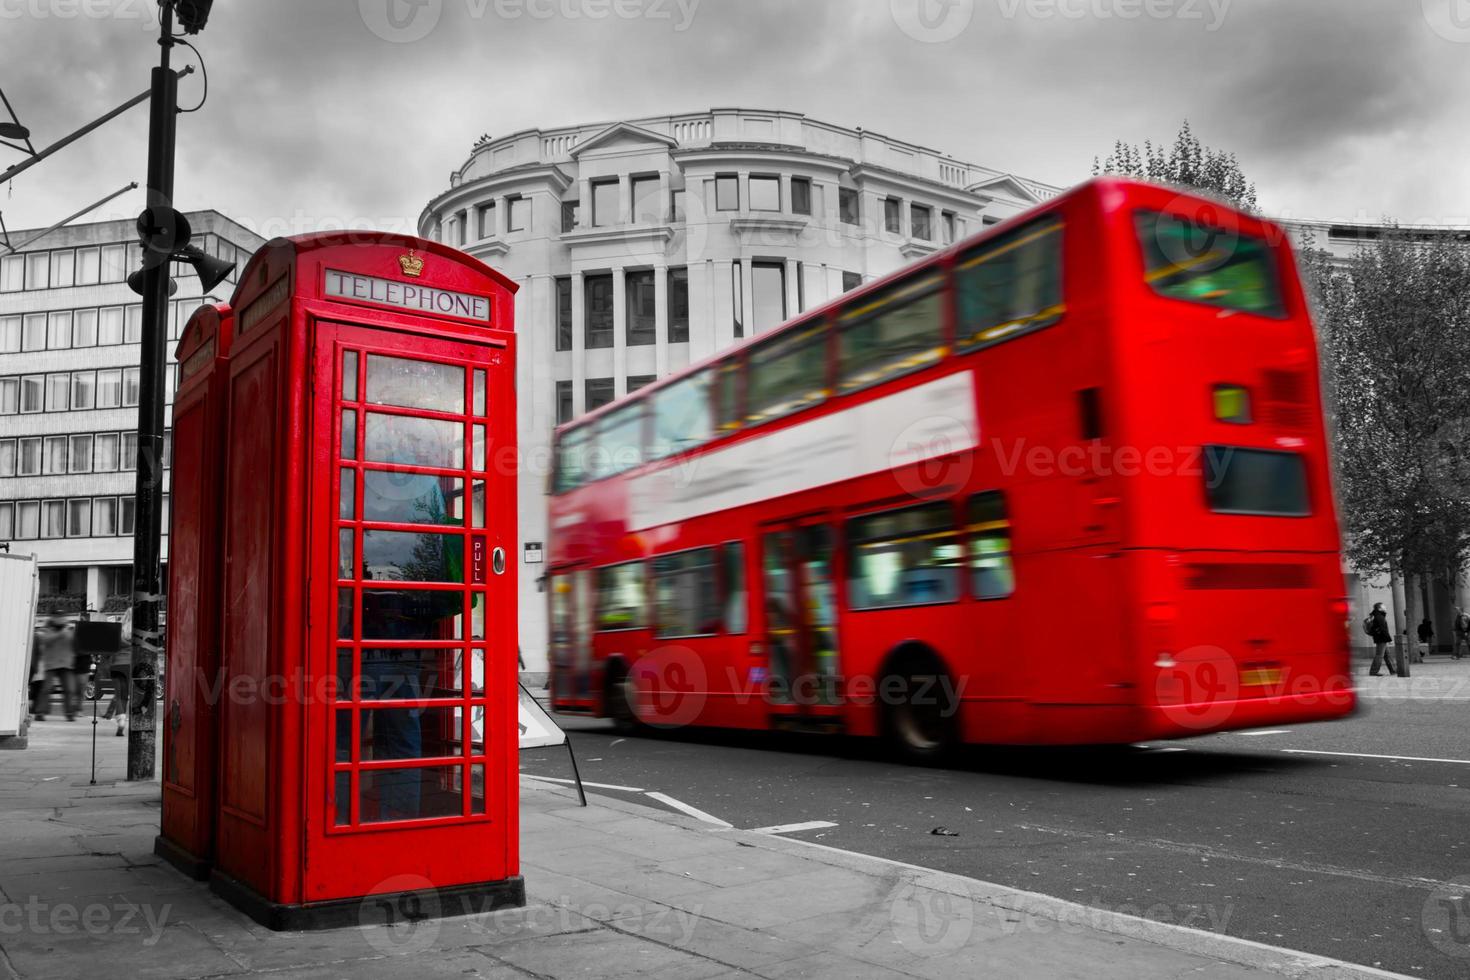 london, Storbritannien. röd telefonkiosk och röd buss i rörelse foto